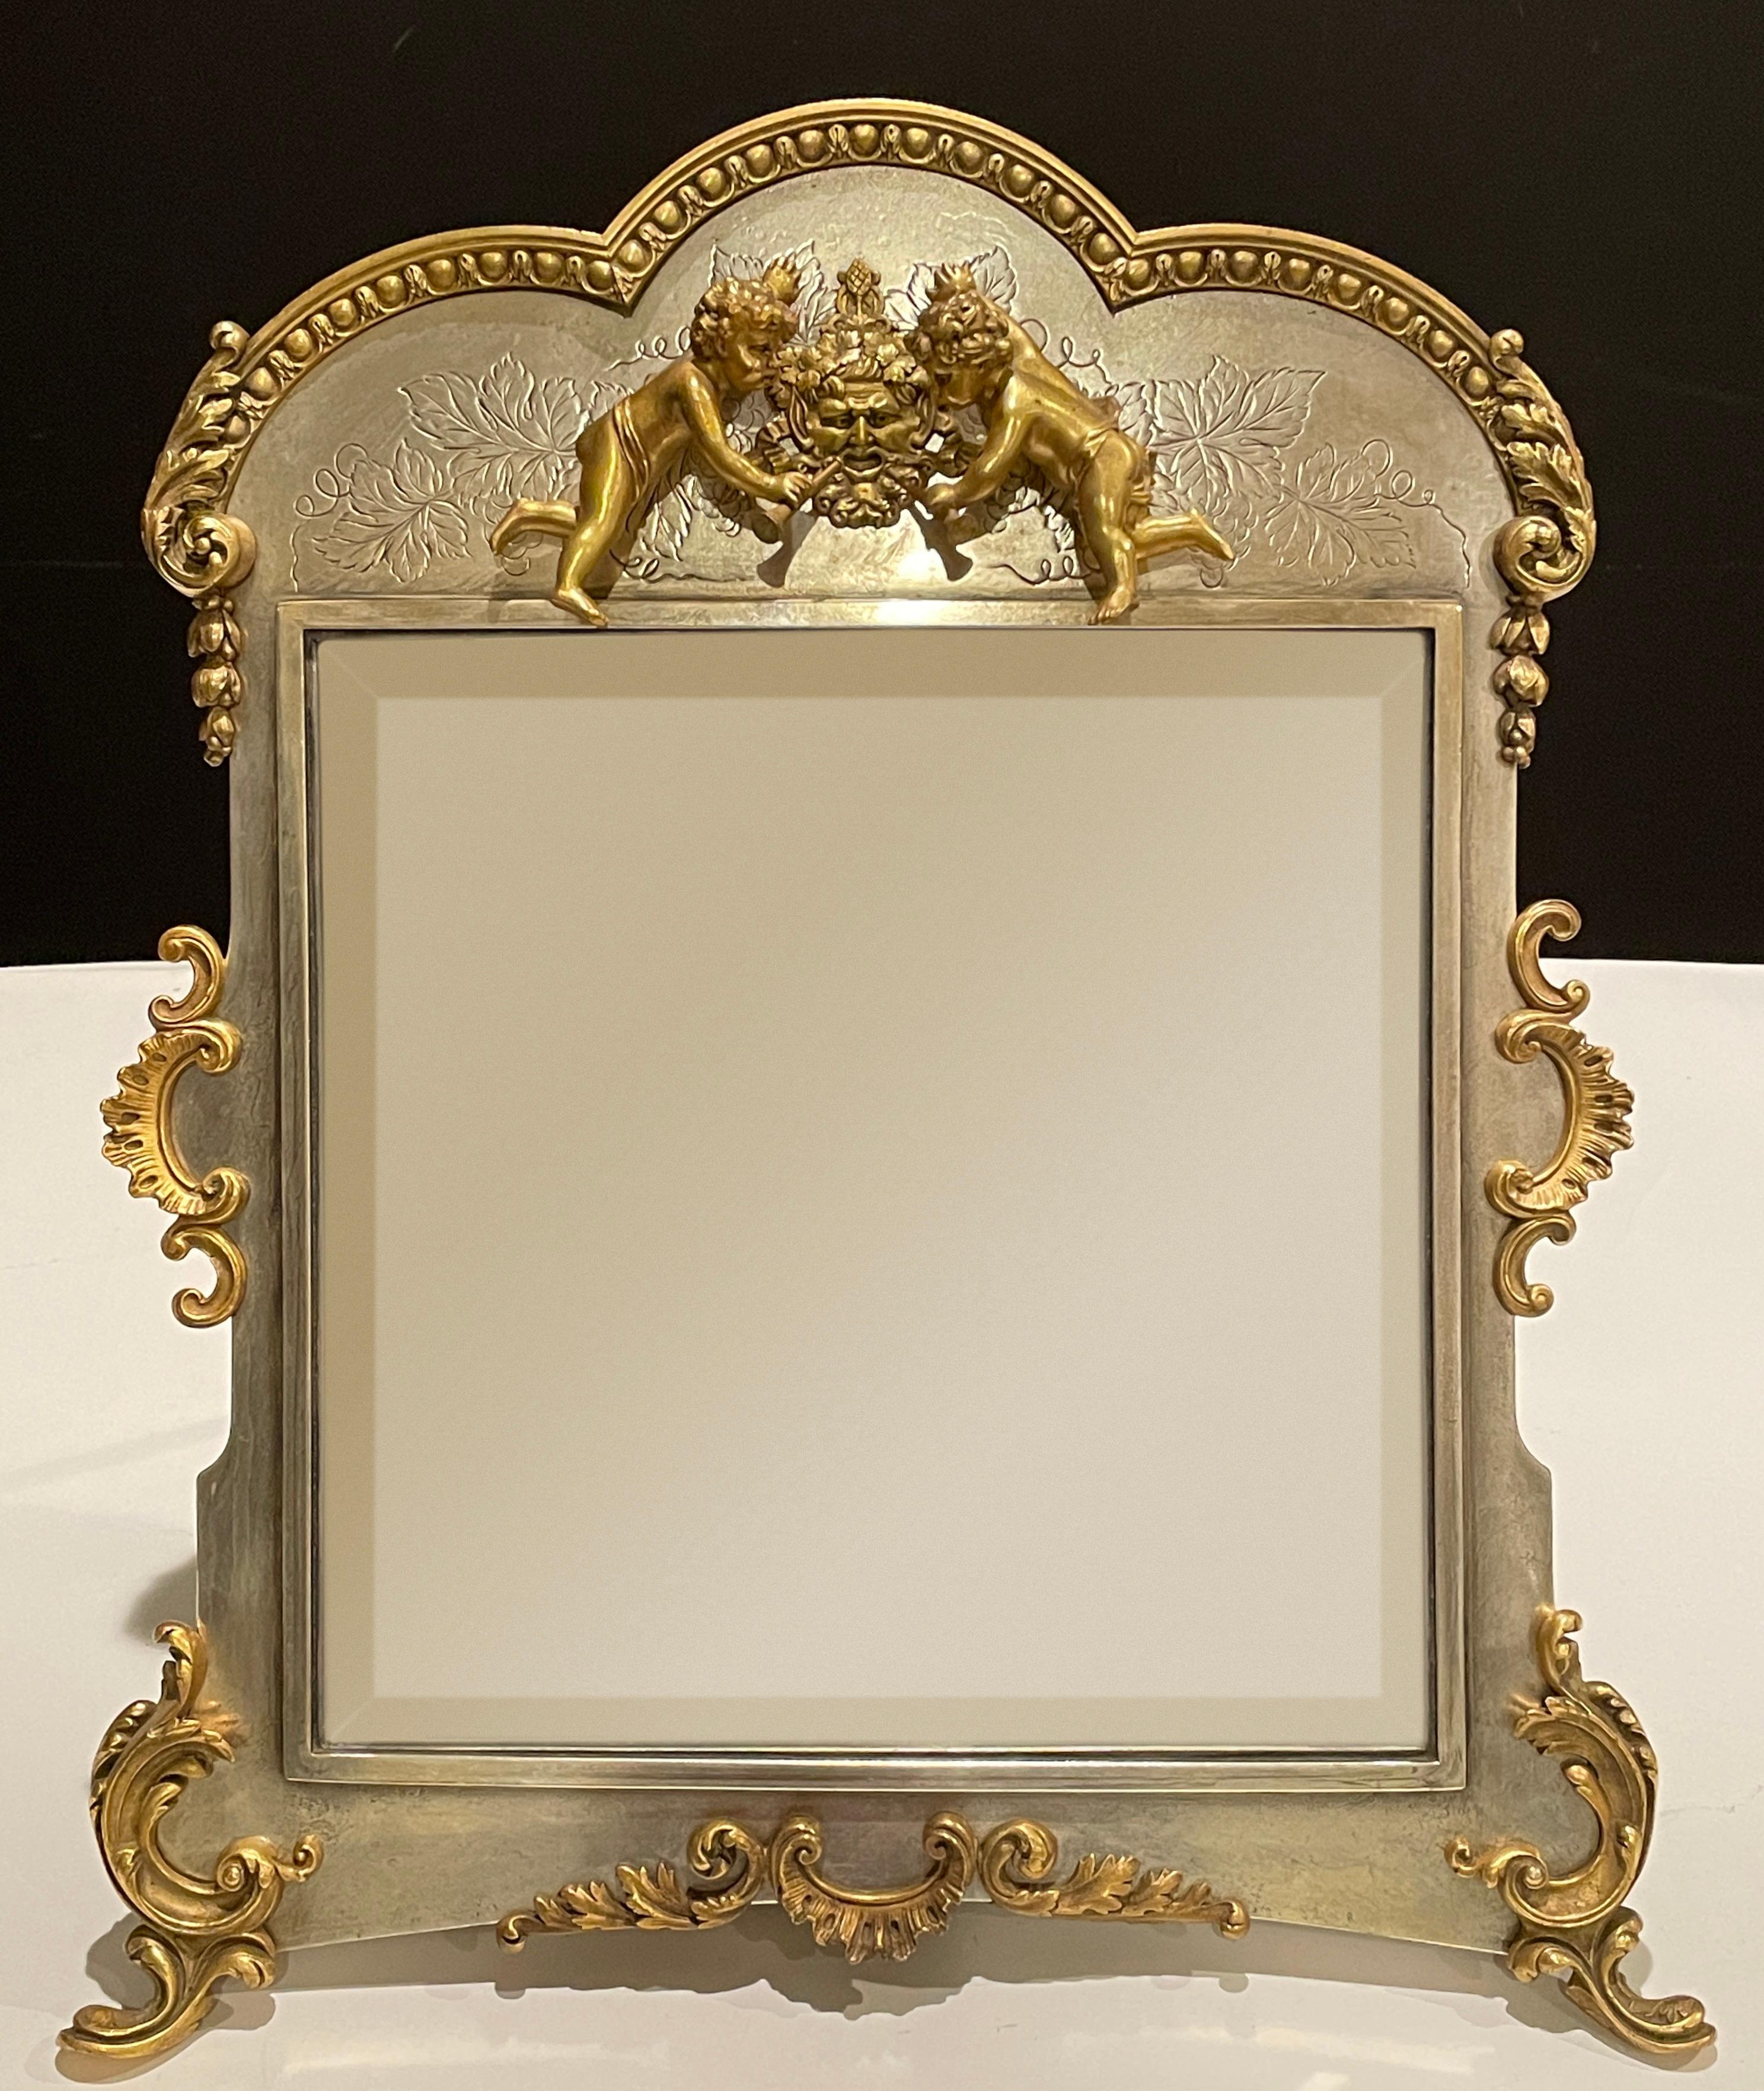 Miroir de table américain du 19ème siècle en métal argenté et doré. 
Dans le style rococo, le cadre décoré de volutes florales et feuillagées est surmonté d'un putto avec un masque de Bacchus soufflant des trompettes, le tout reposant sur des pieds